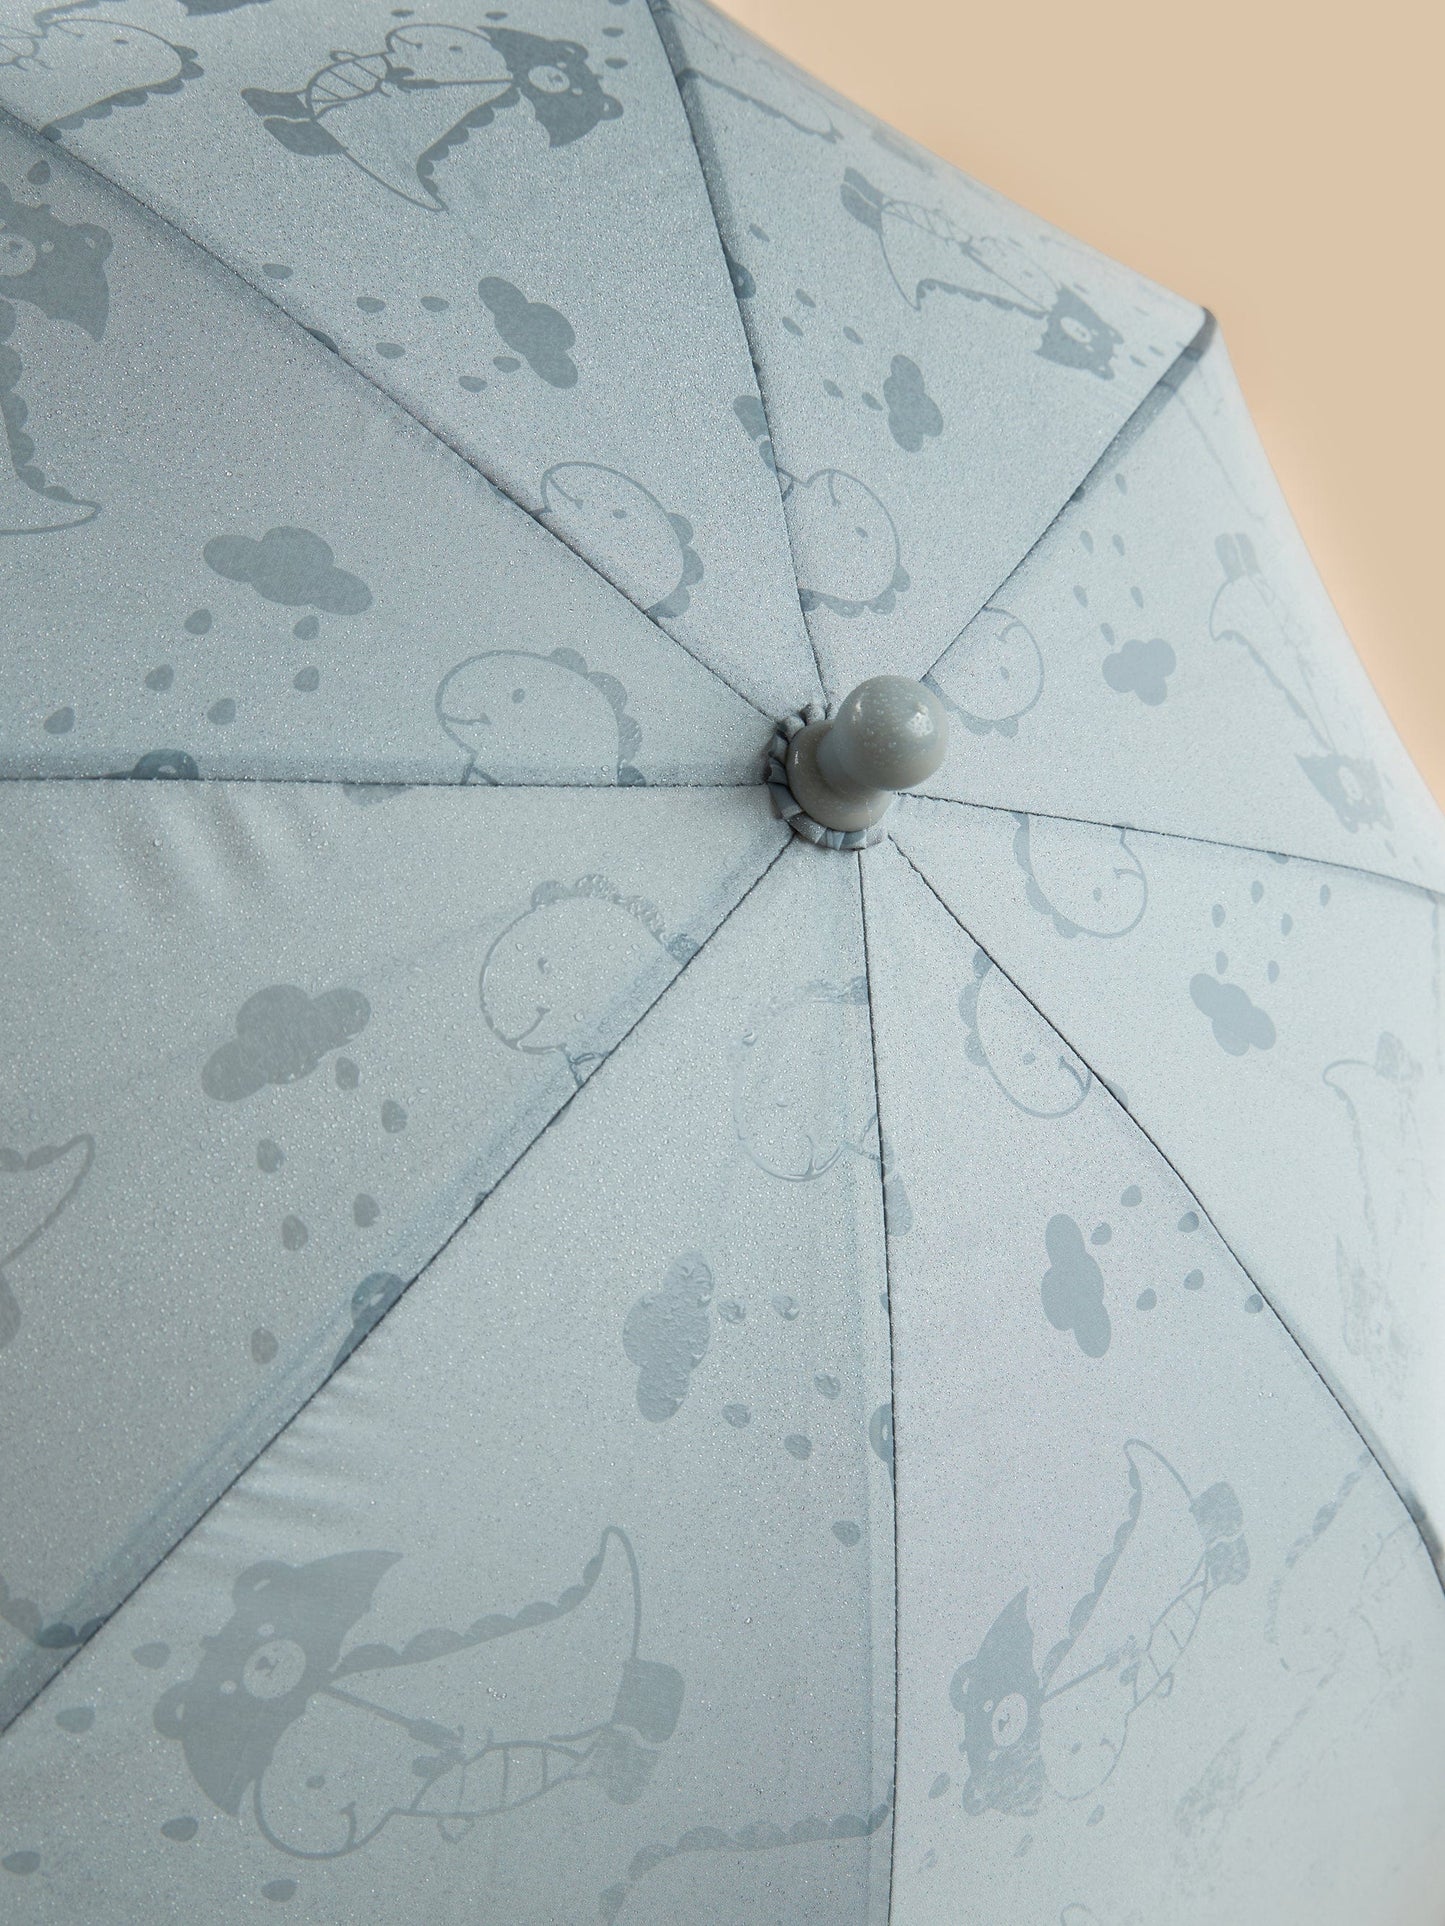 Dino Magic Umbrella